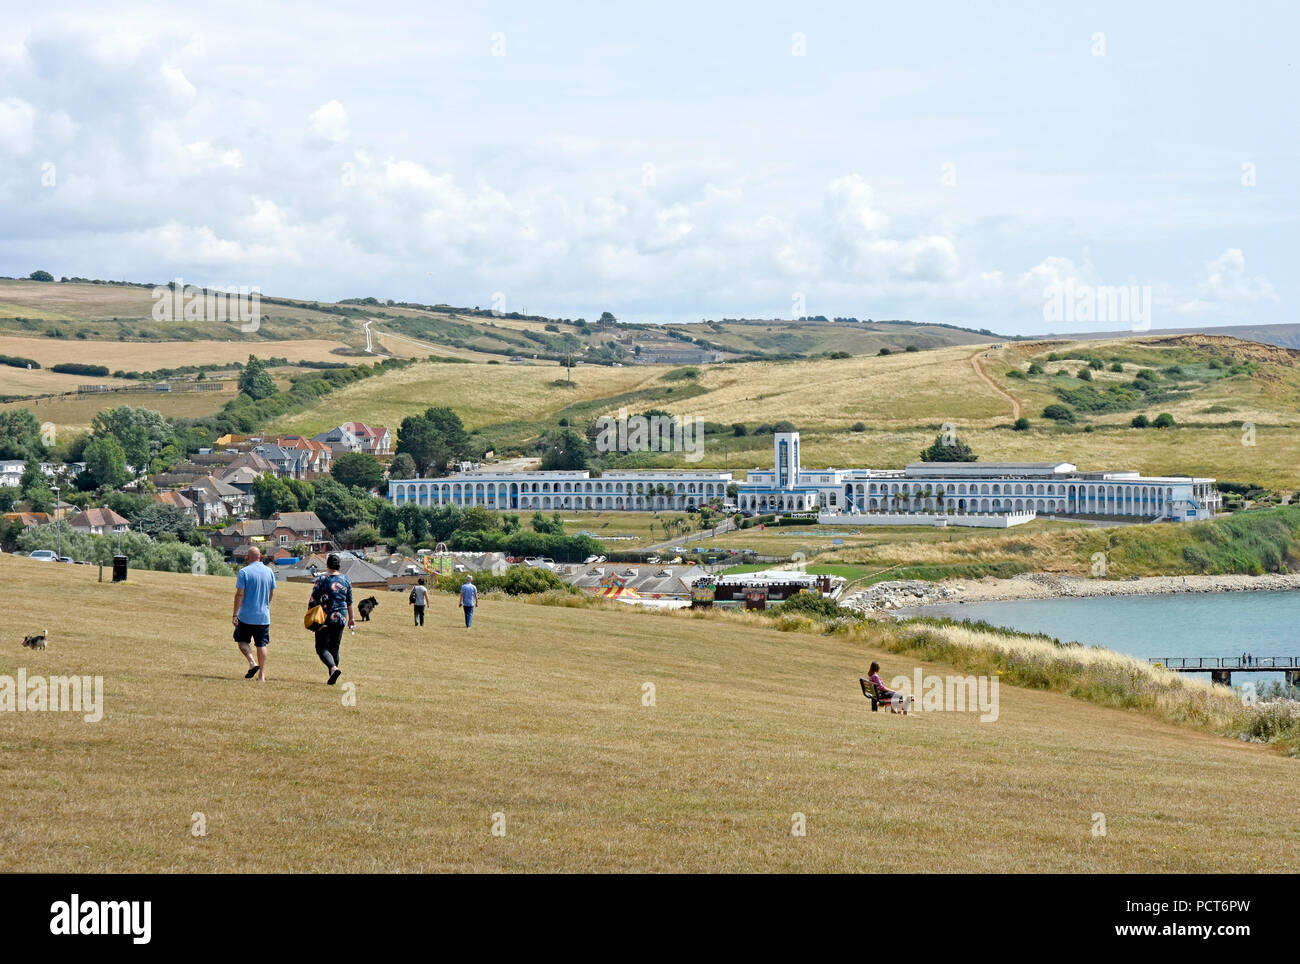 Dorset - Weymouth - vue de la colline de la Jordanie à Riviera Hotel à Bowleaze Cove - summertime - personnes à pied - chiens jouant Banque D'Images